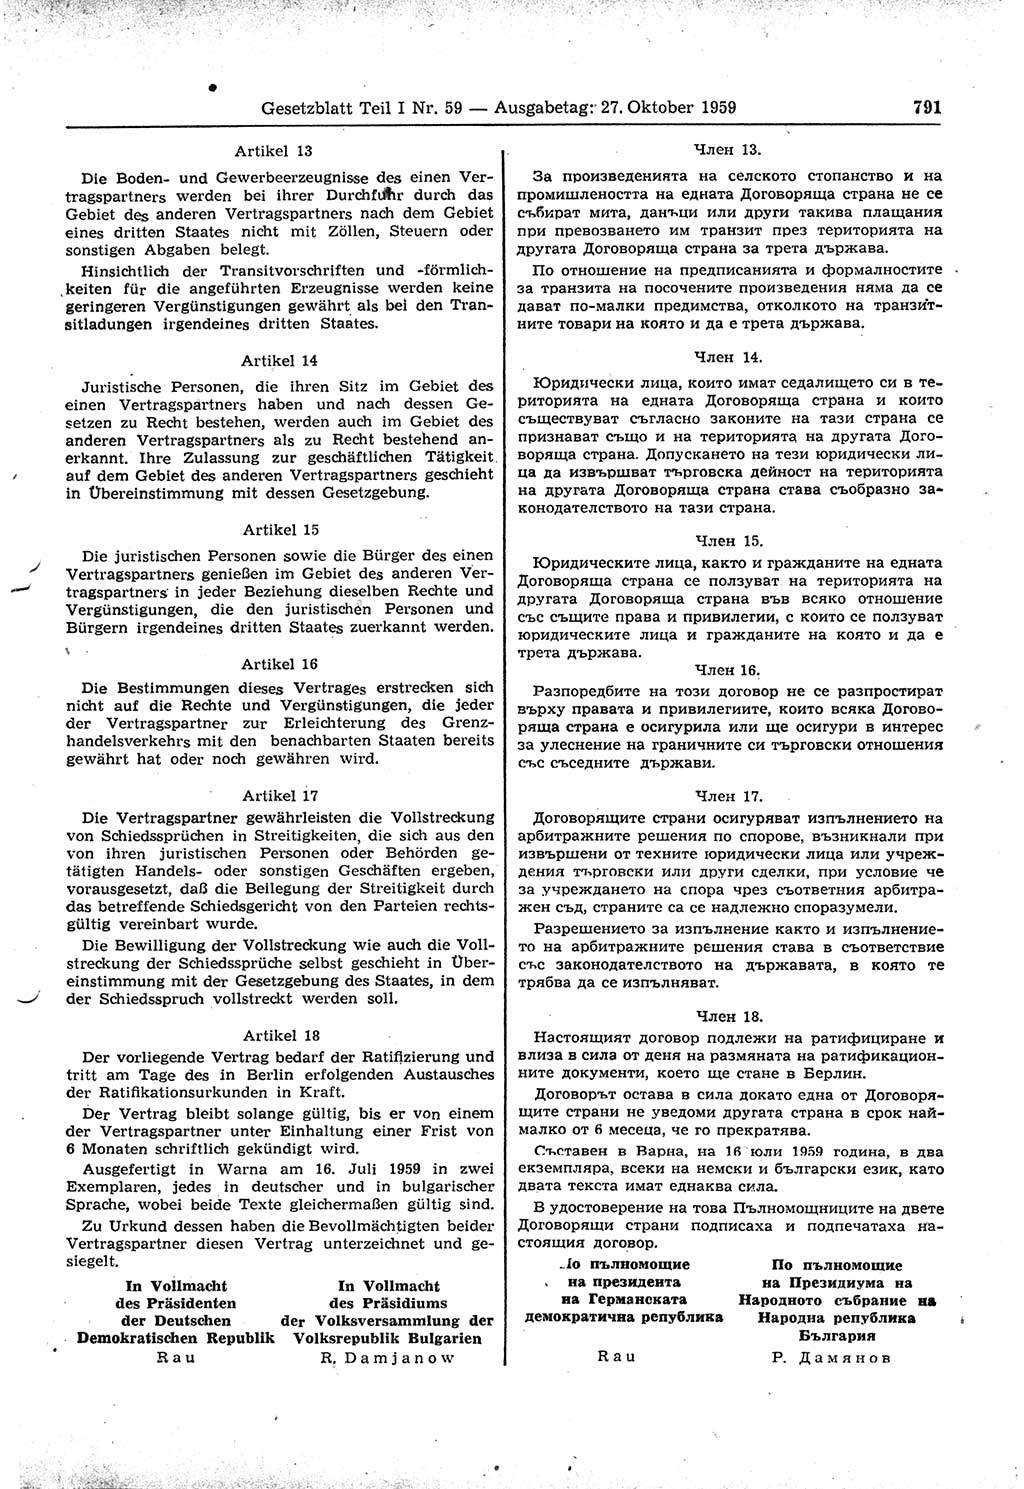 Gesetzblatt (GBl.) der Deutschen Demokratischen Republik (DDR) Teil Ⅰ 1959, Seite 791 (GBl. DDR Ⅰ 1959, S. 791)